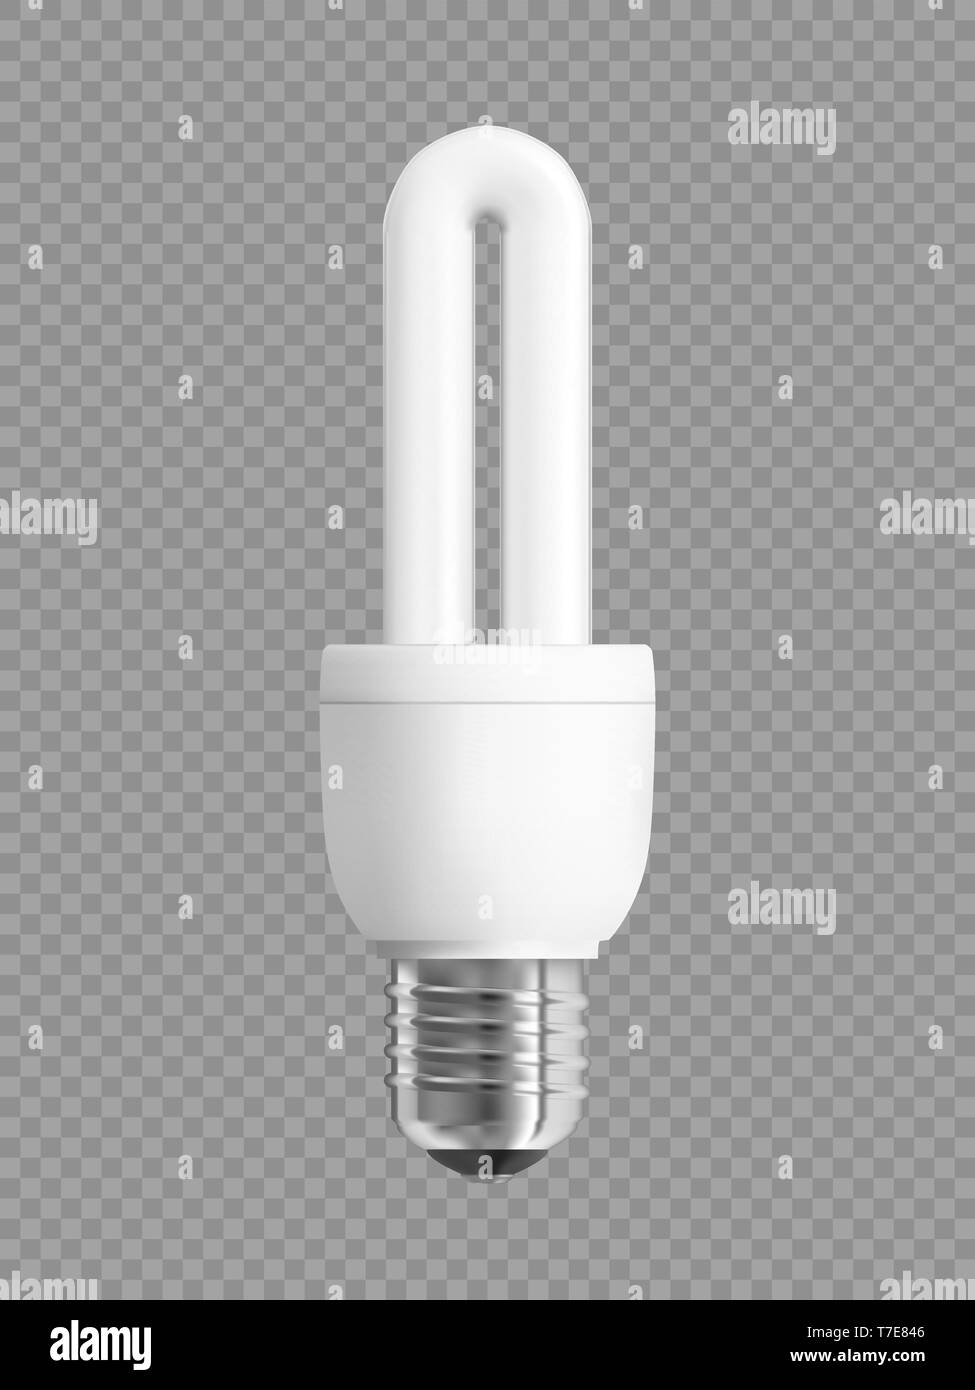 Ampoule à économie d'énergie sur fond quadrillé Illustration de Vecteur